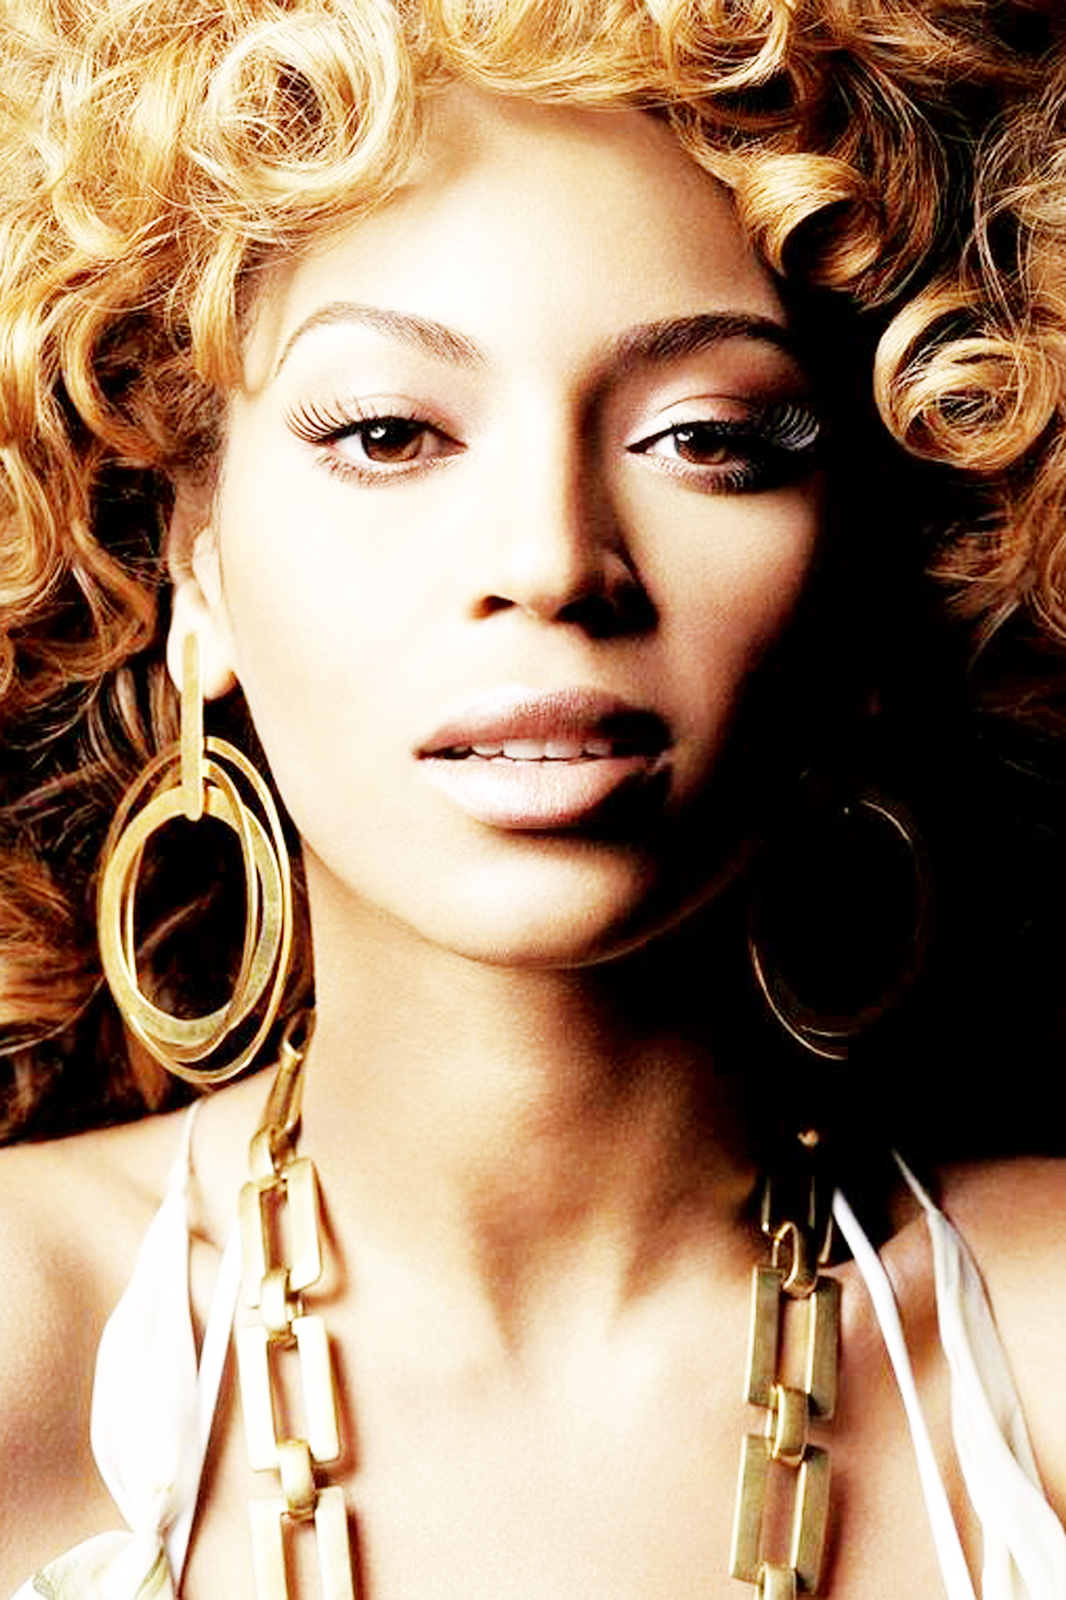 http://4.bp.blogspot.com/-klKbrAmyvRE/UAlBrF-Z5UI/AAAAAAAACYI/oehO-4MiQQw/s1600/Beyonce-Biography-1.jpg